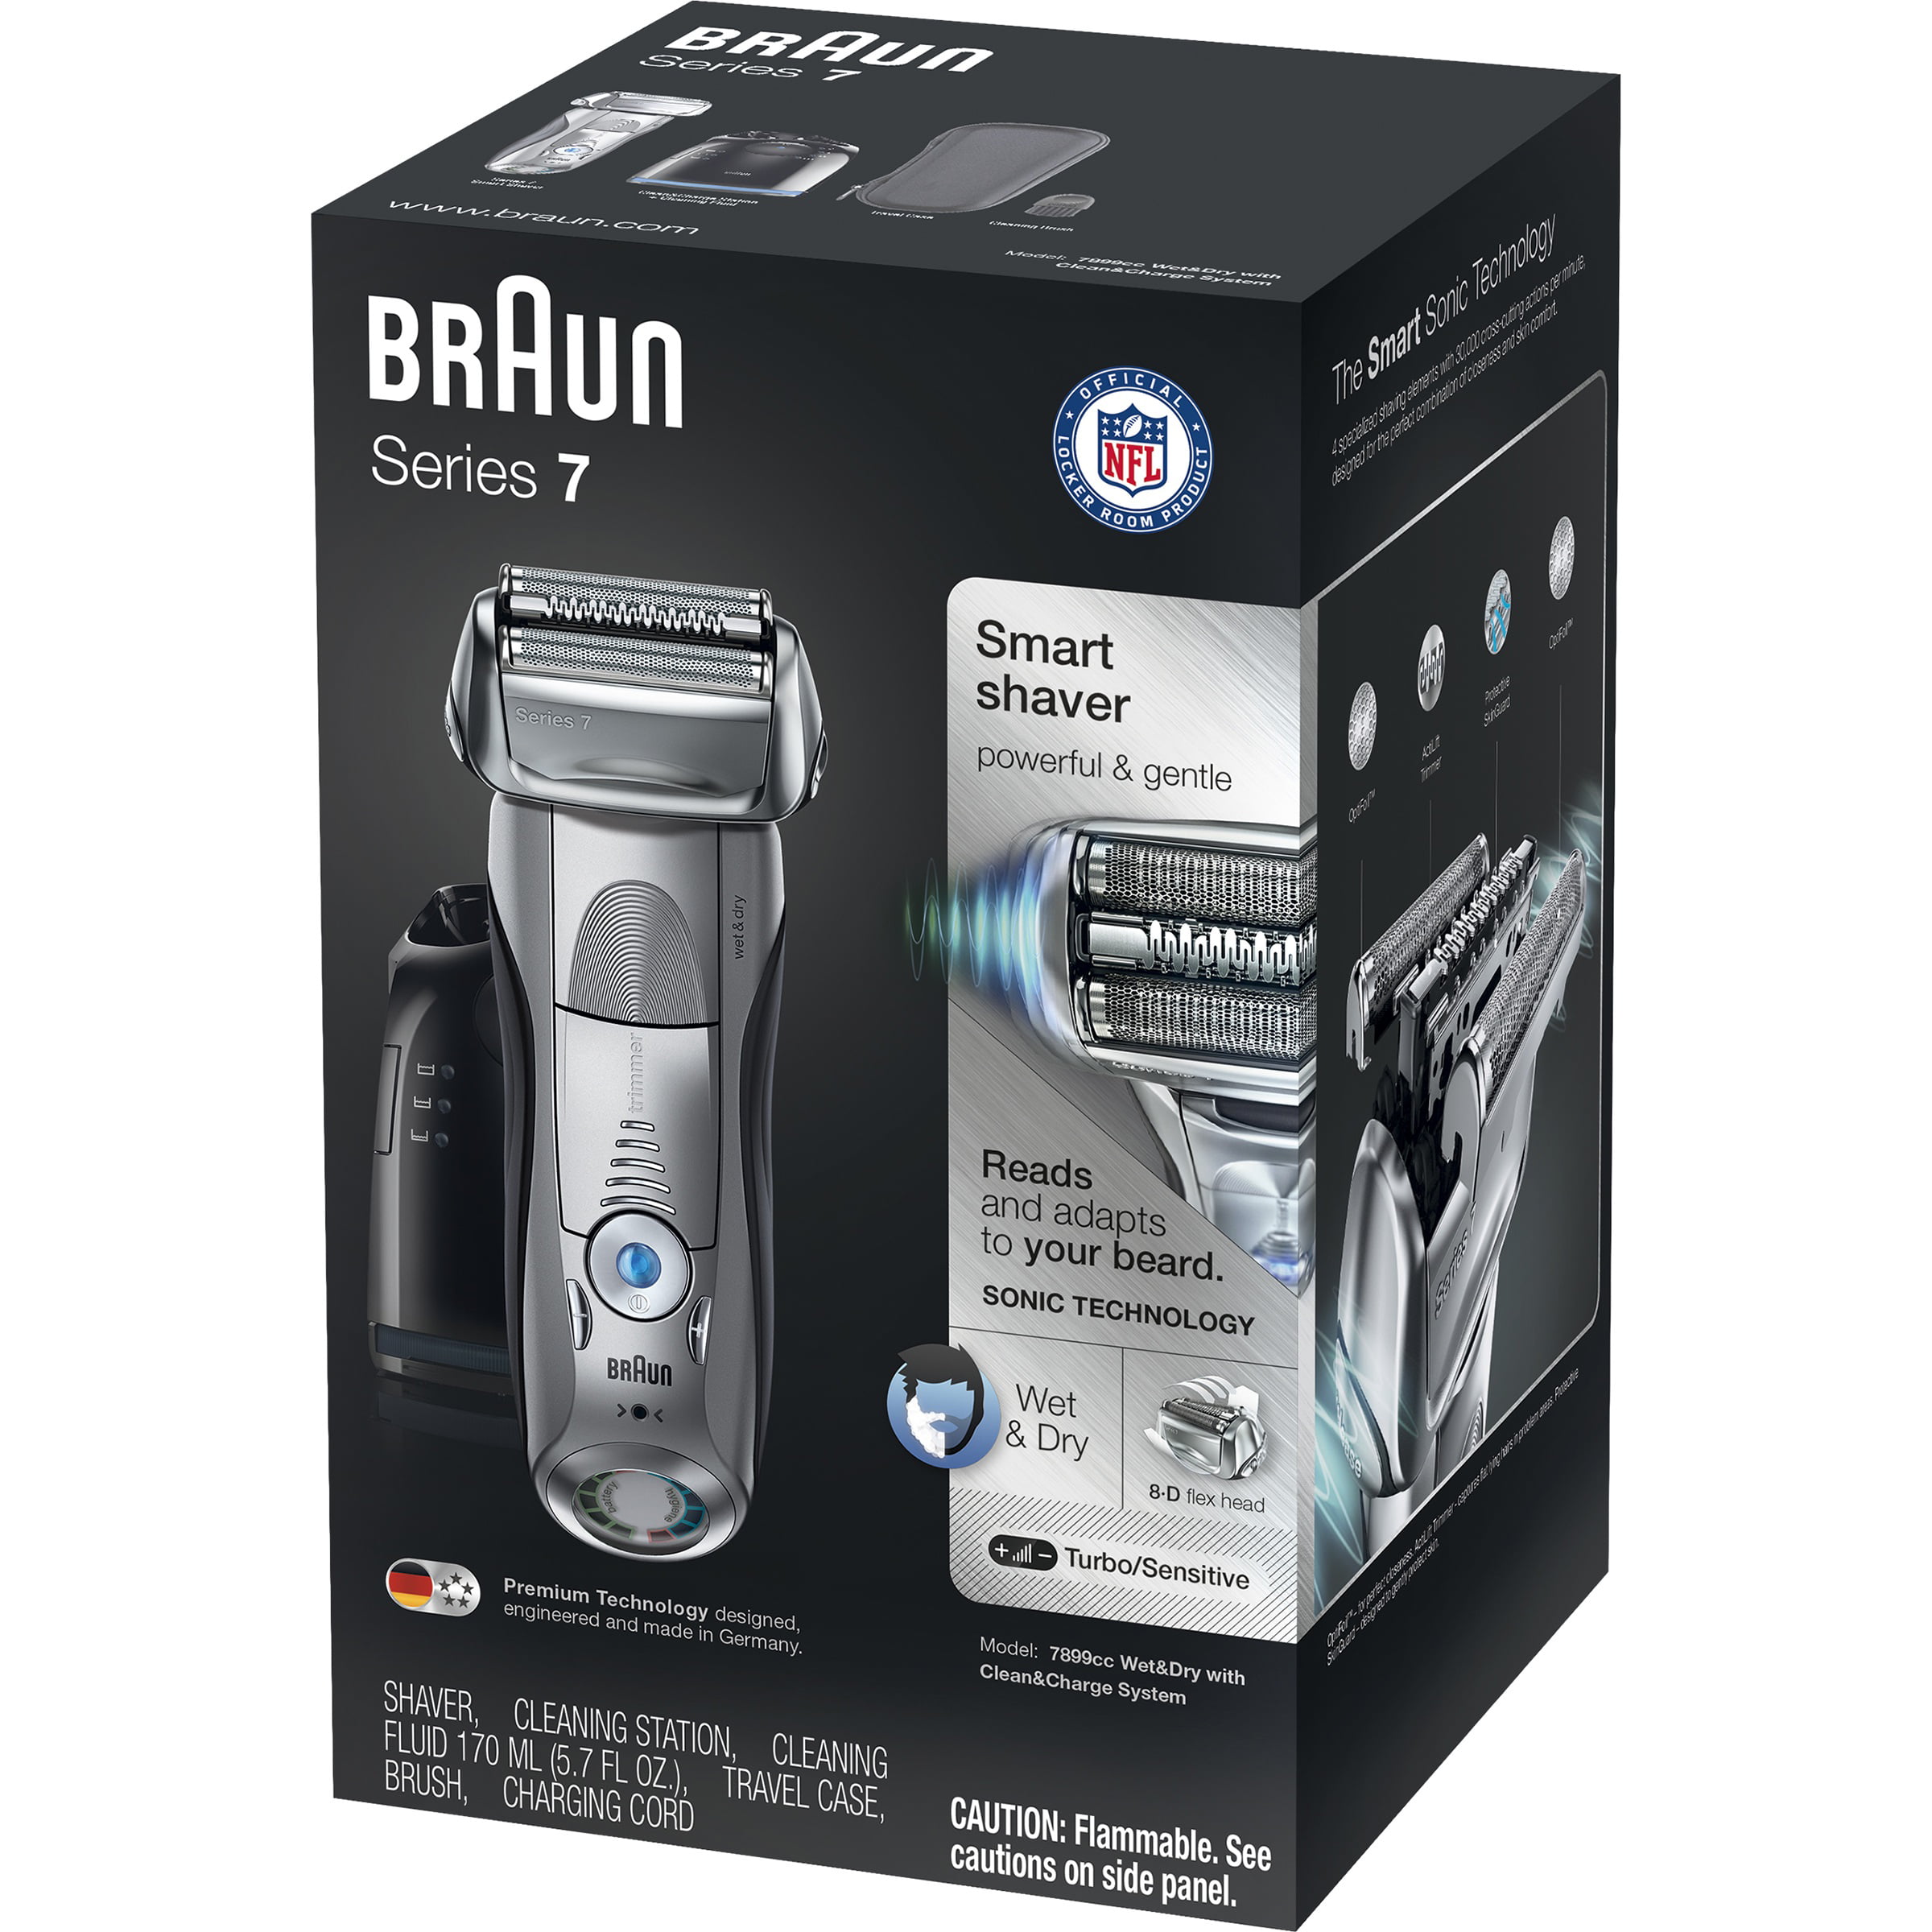 Бритва braun series 7. Бритва Braun 7865cc Series 7. Бритва Браун 7 7865сс. Braun Series 7 790. Braun 790cc-4 Series 7.